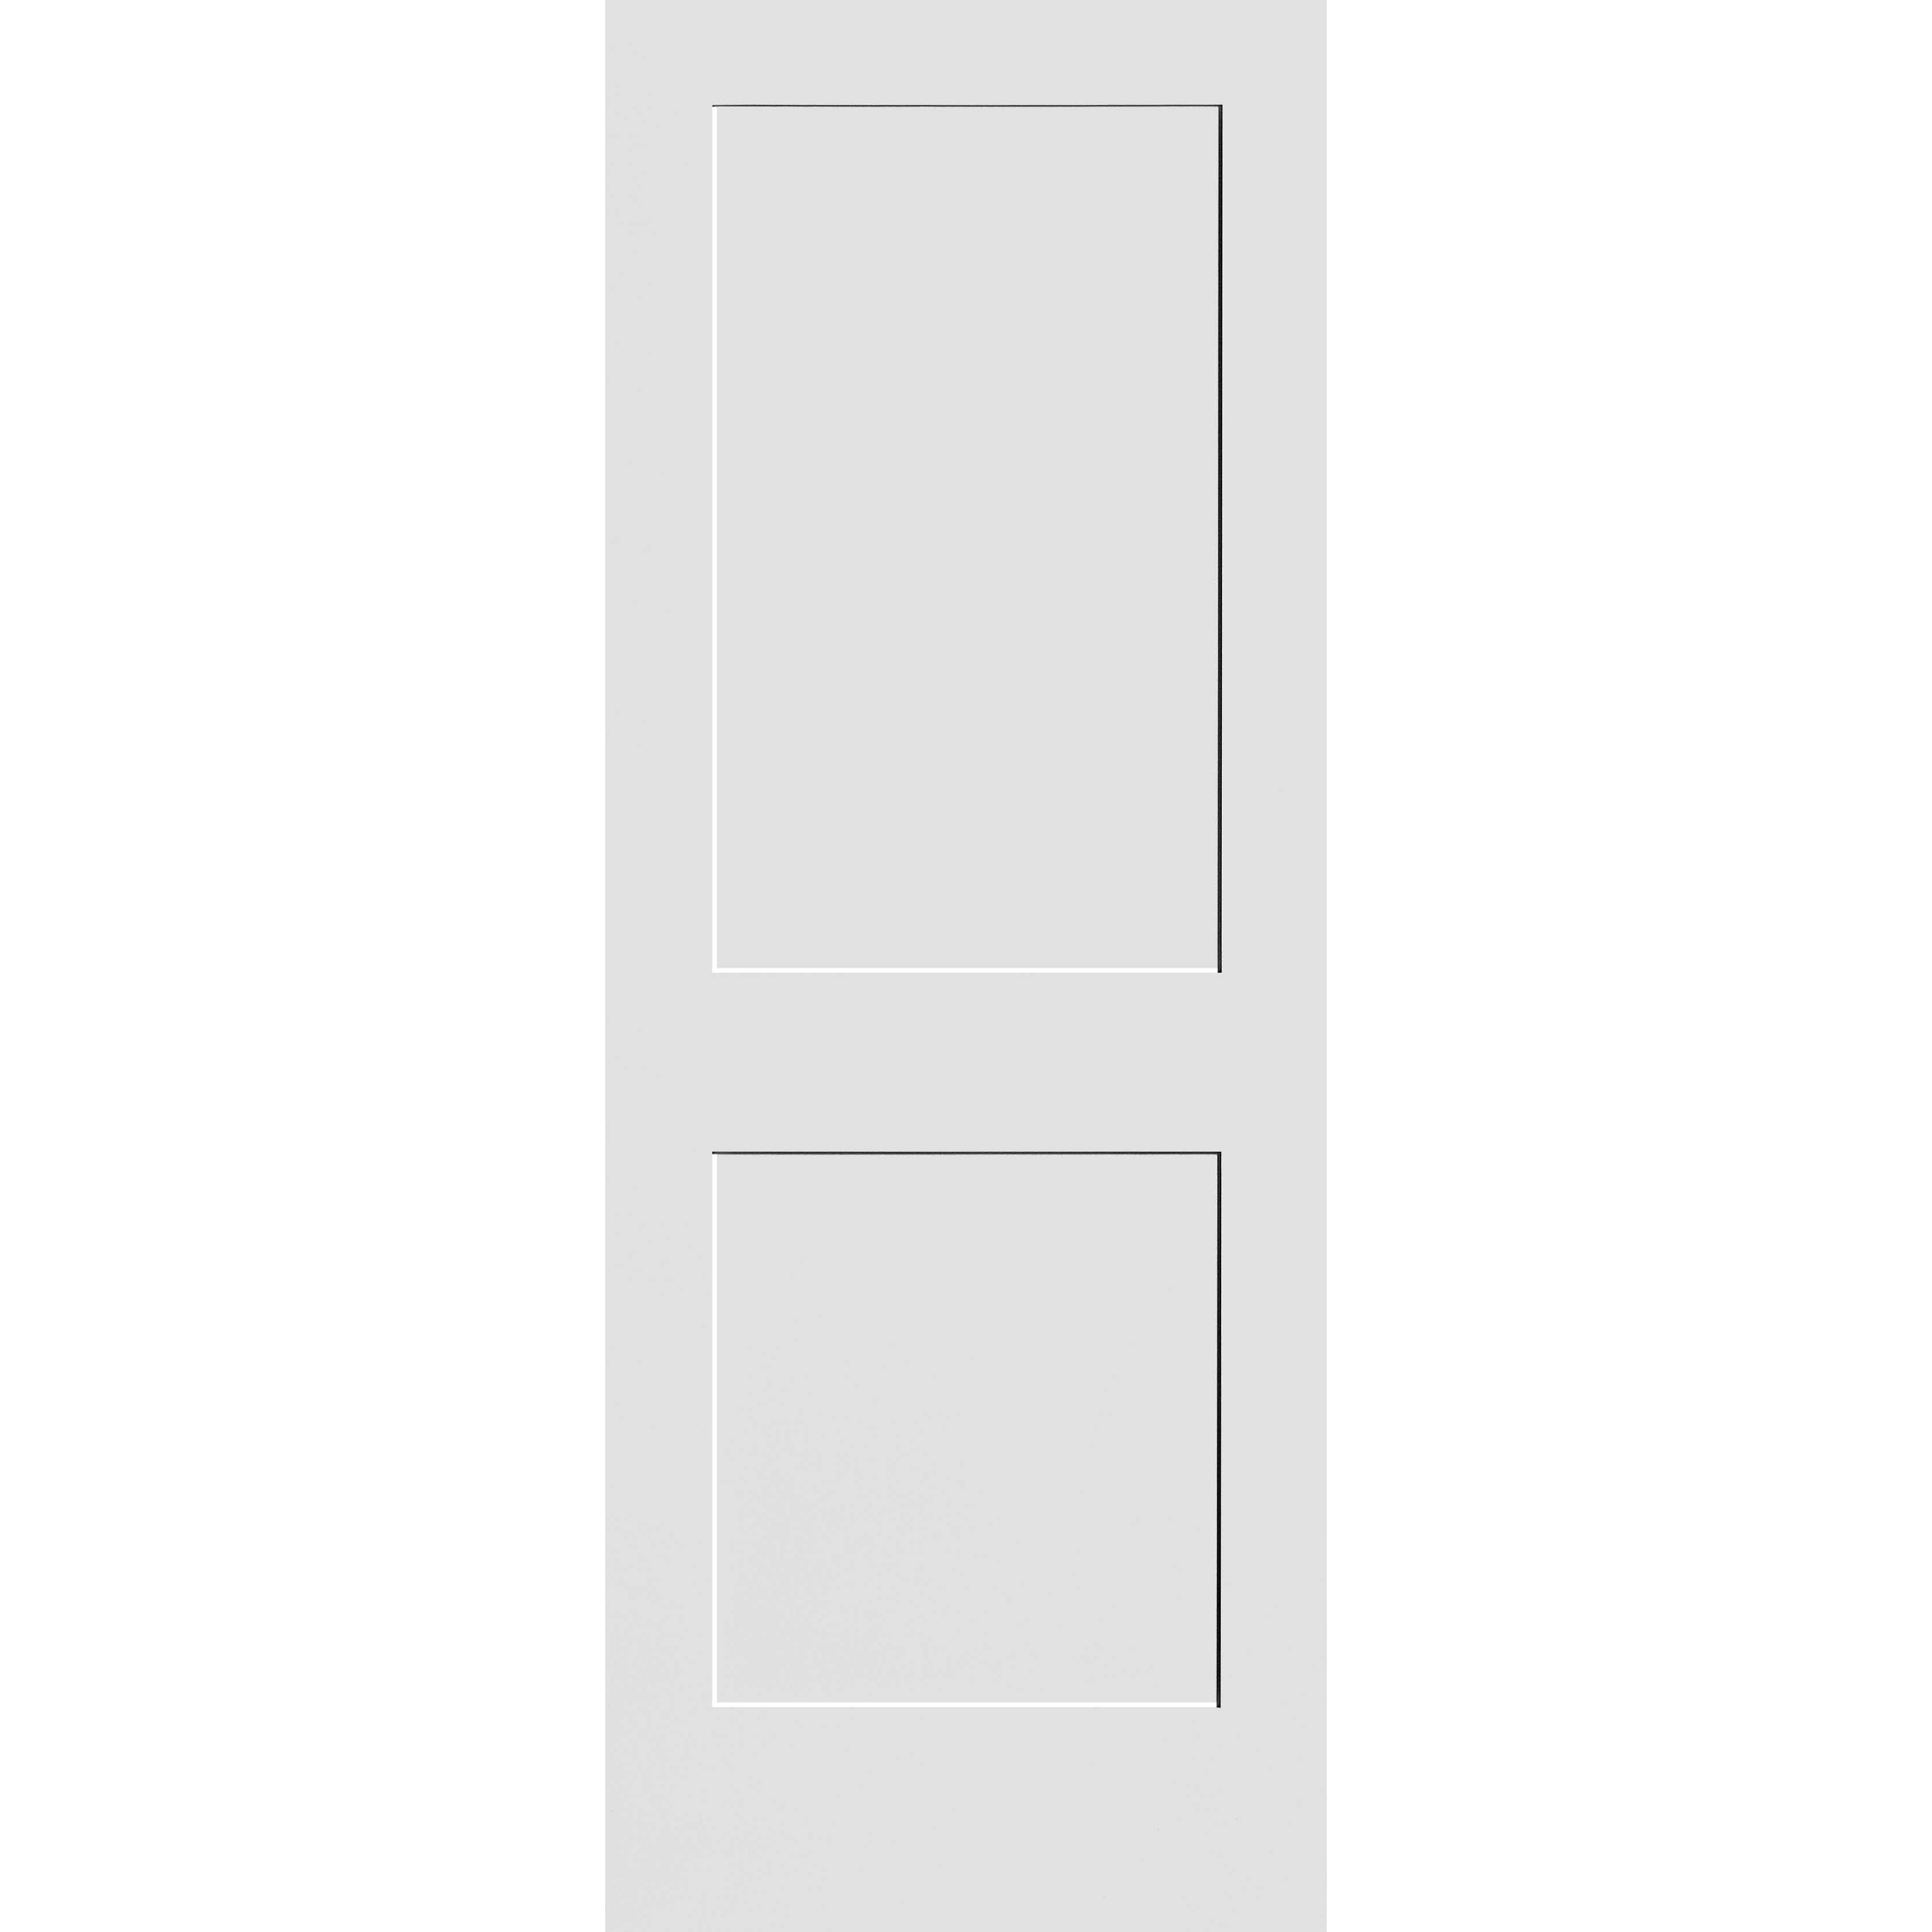 34X80 #8402 MDF PRIMED SHAKER PANEL INTERIOR DOOR